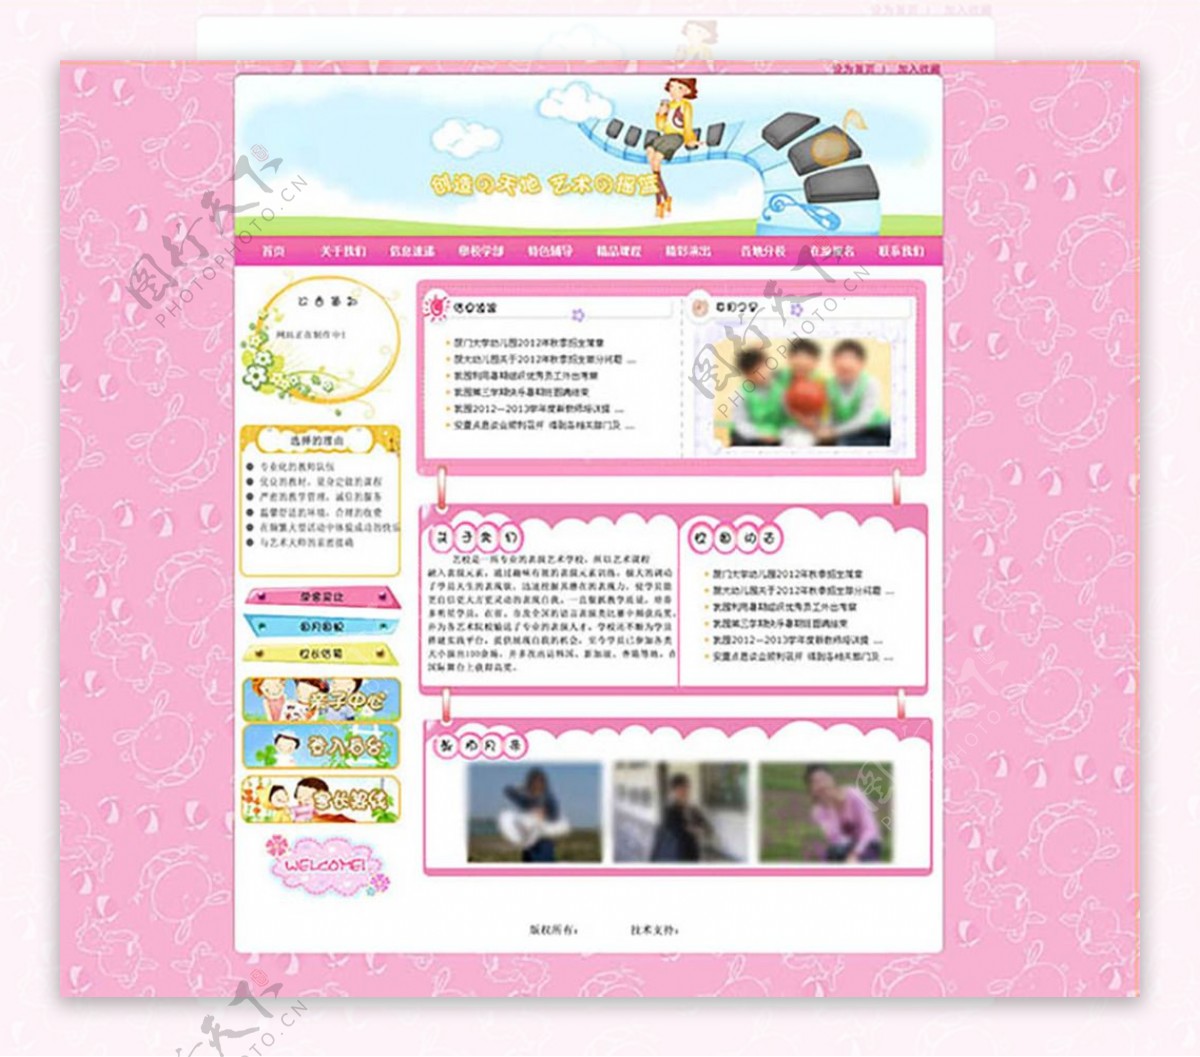 亲子幼儿园网站首页设计